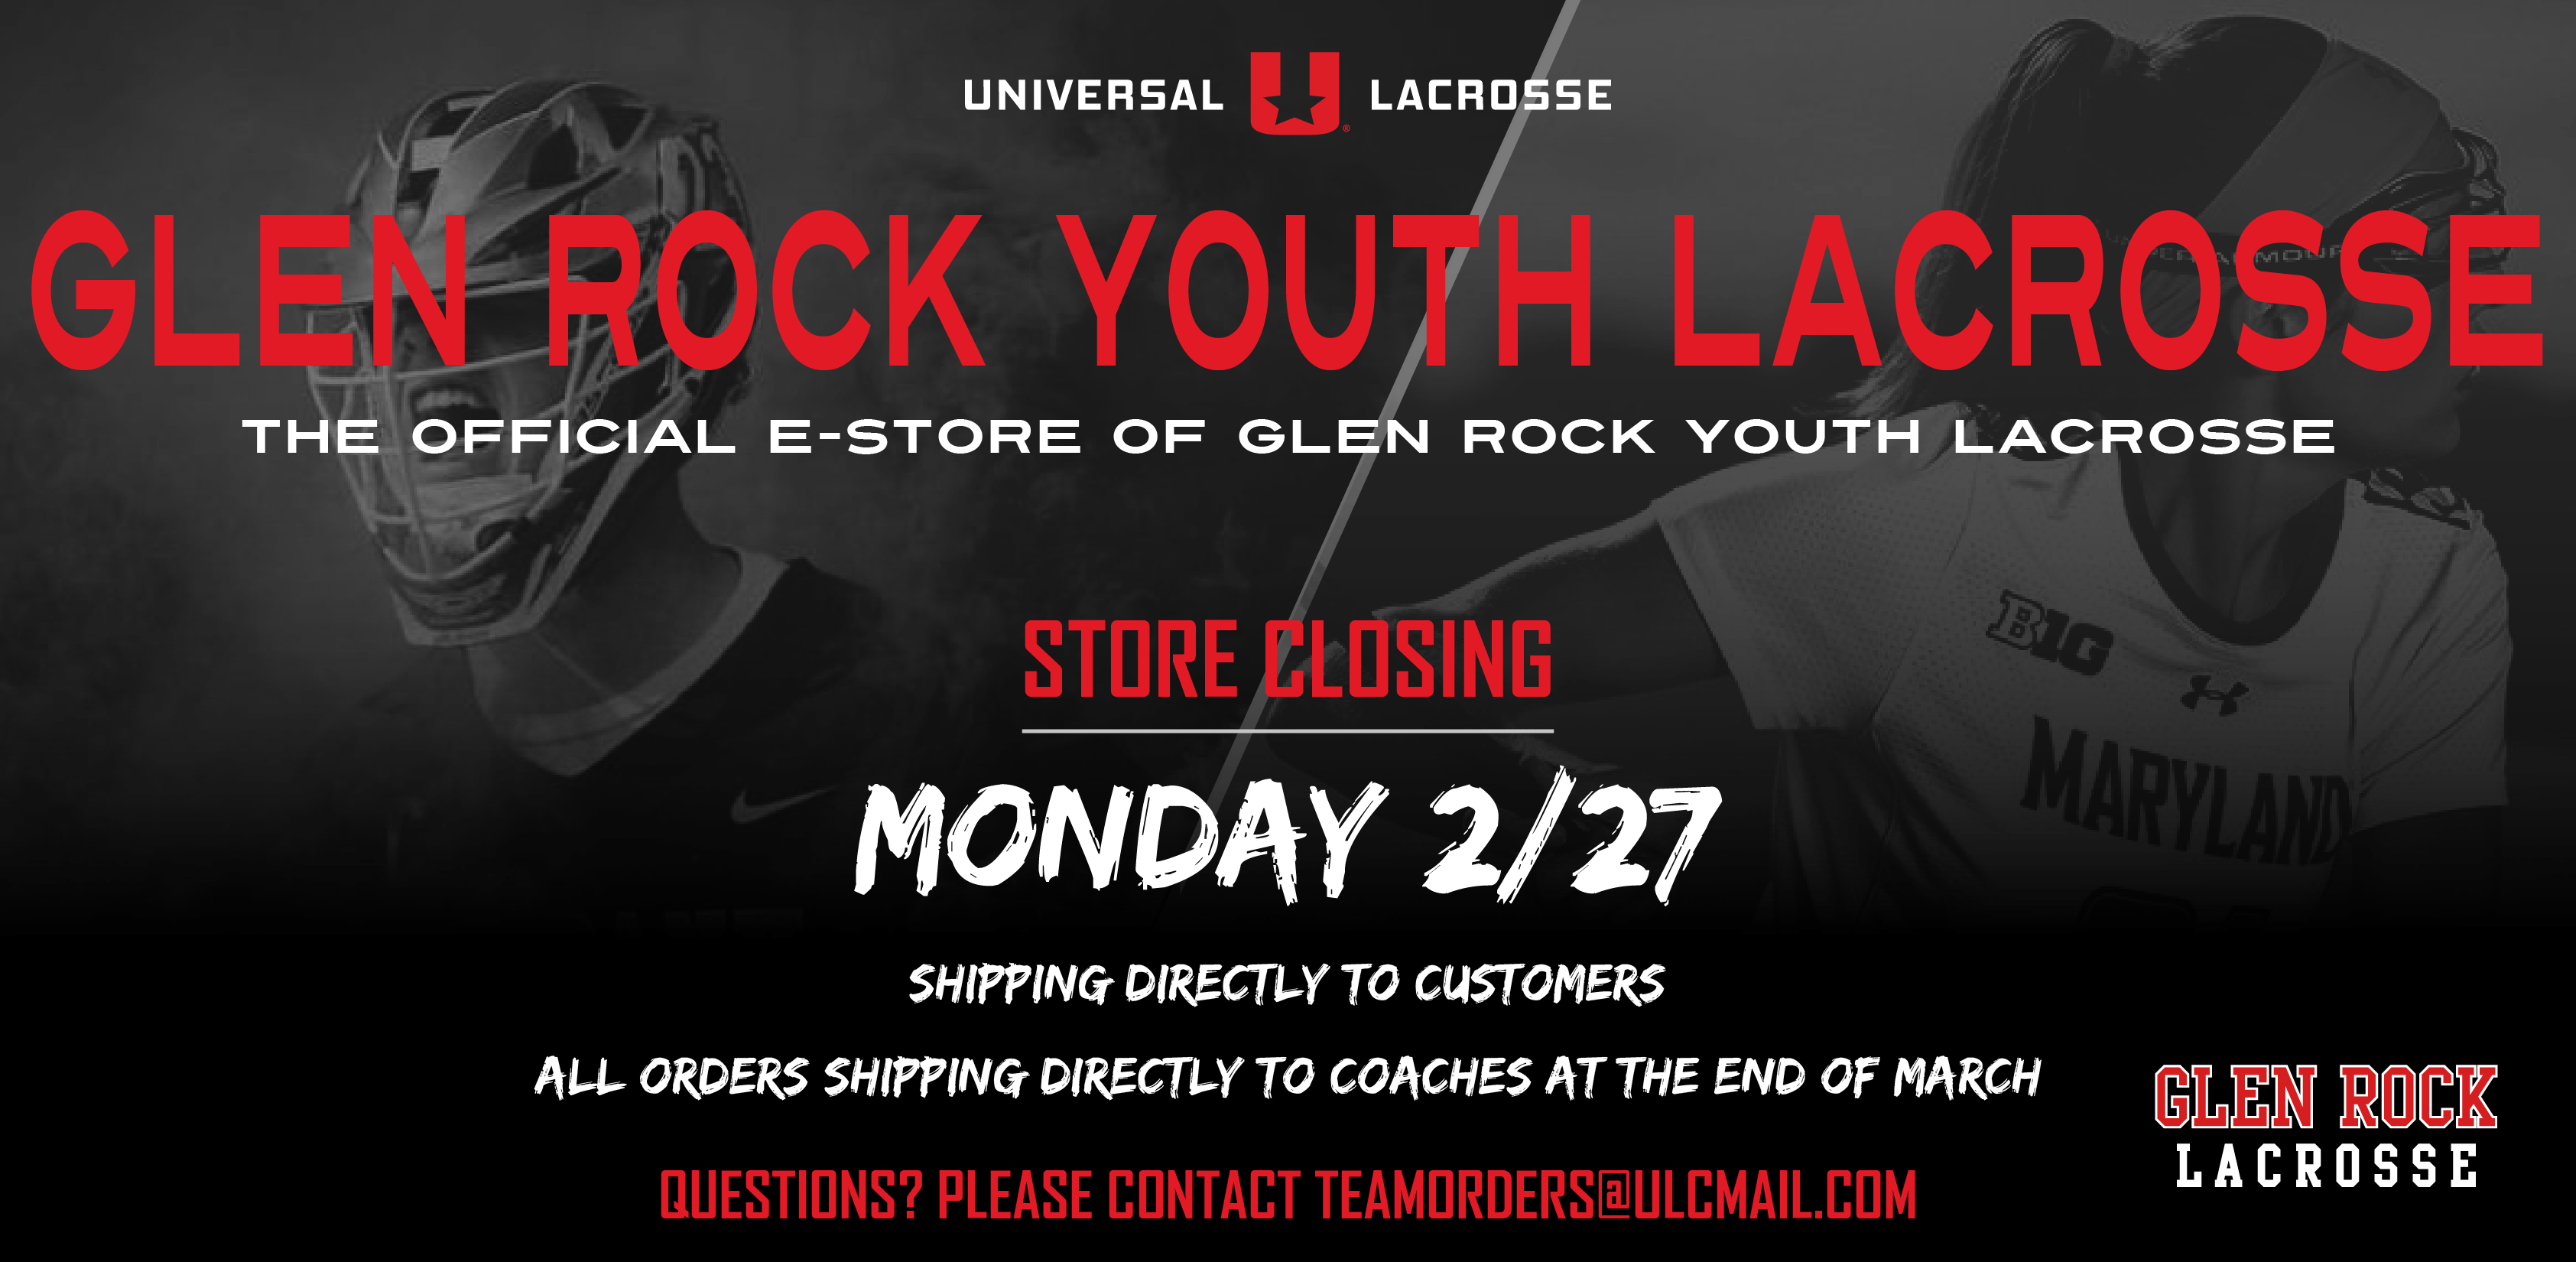 Glen Rock Youth Lacrosse